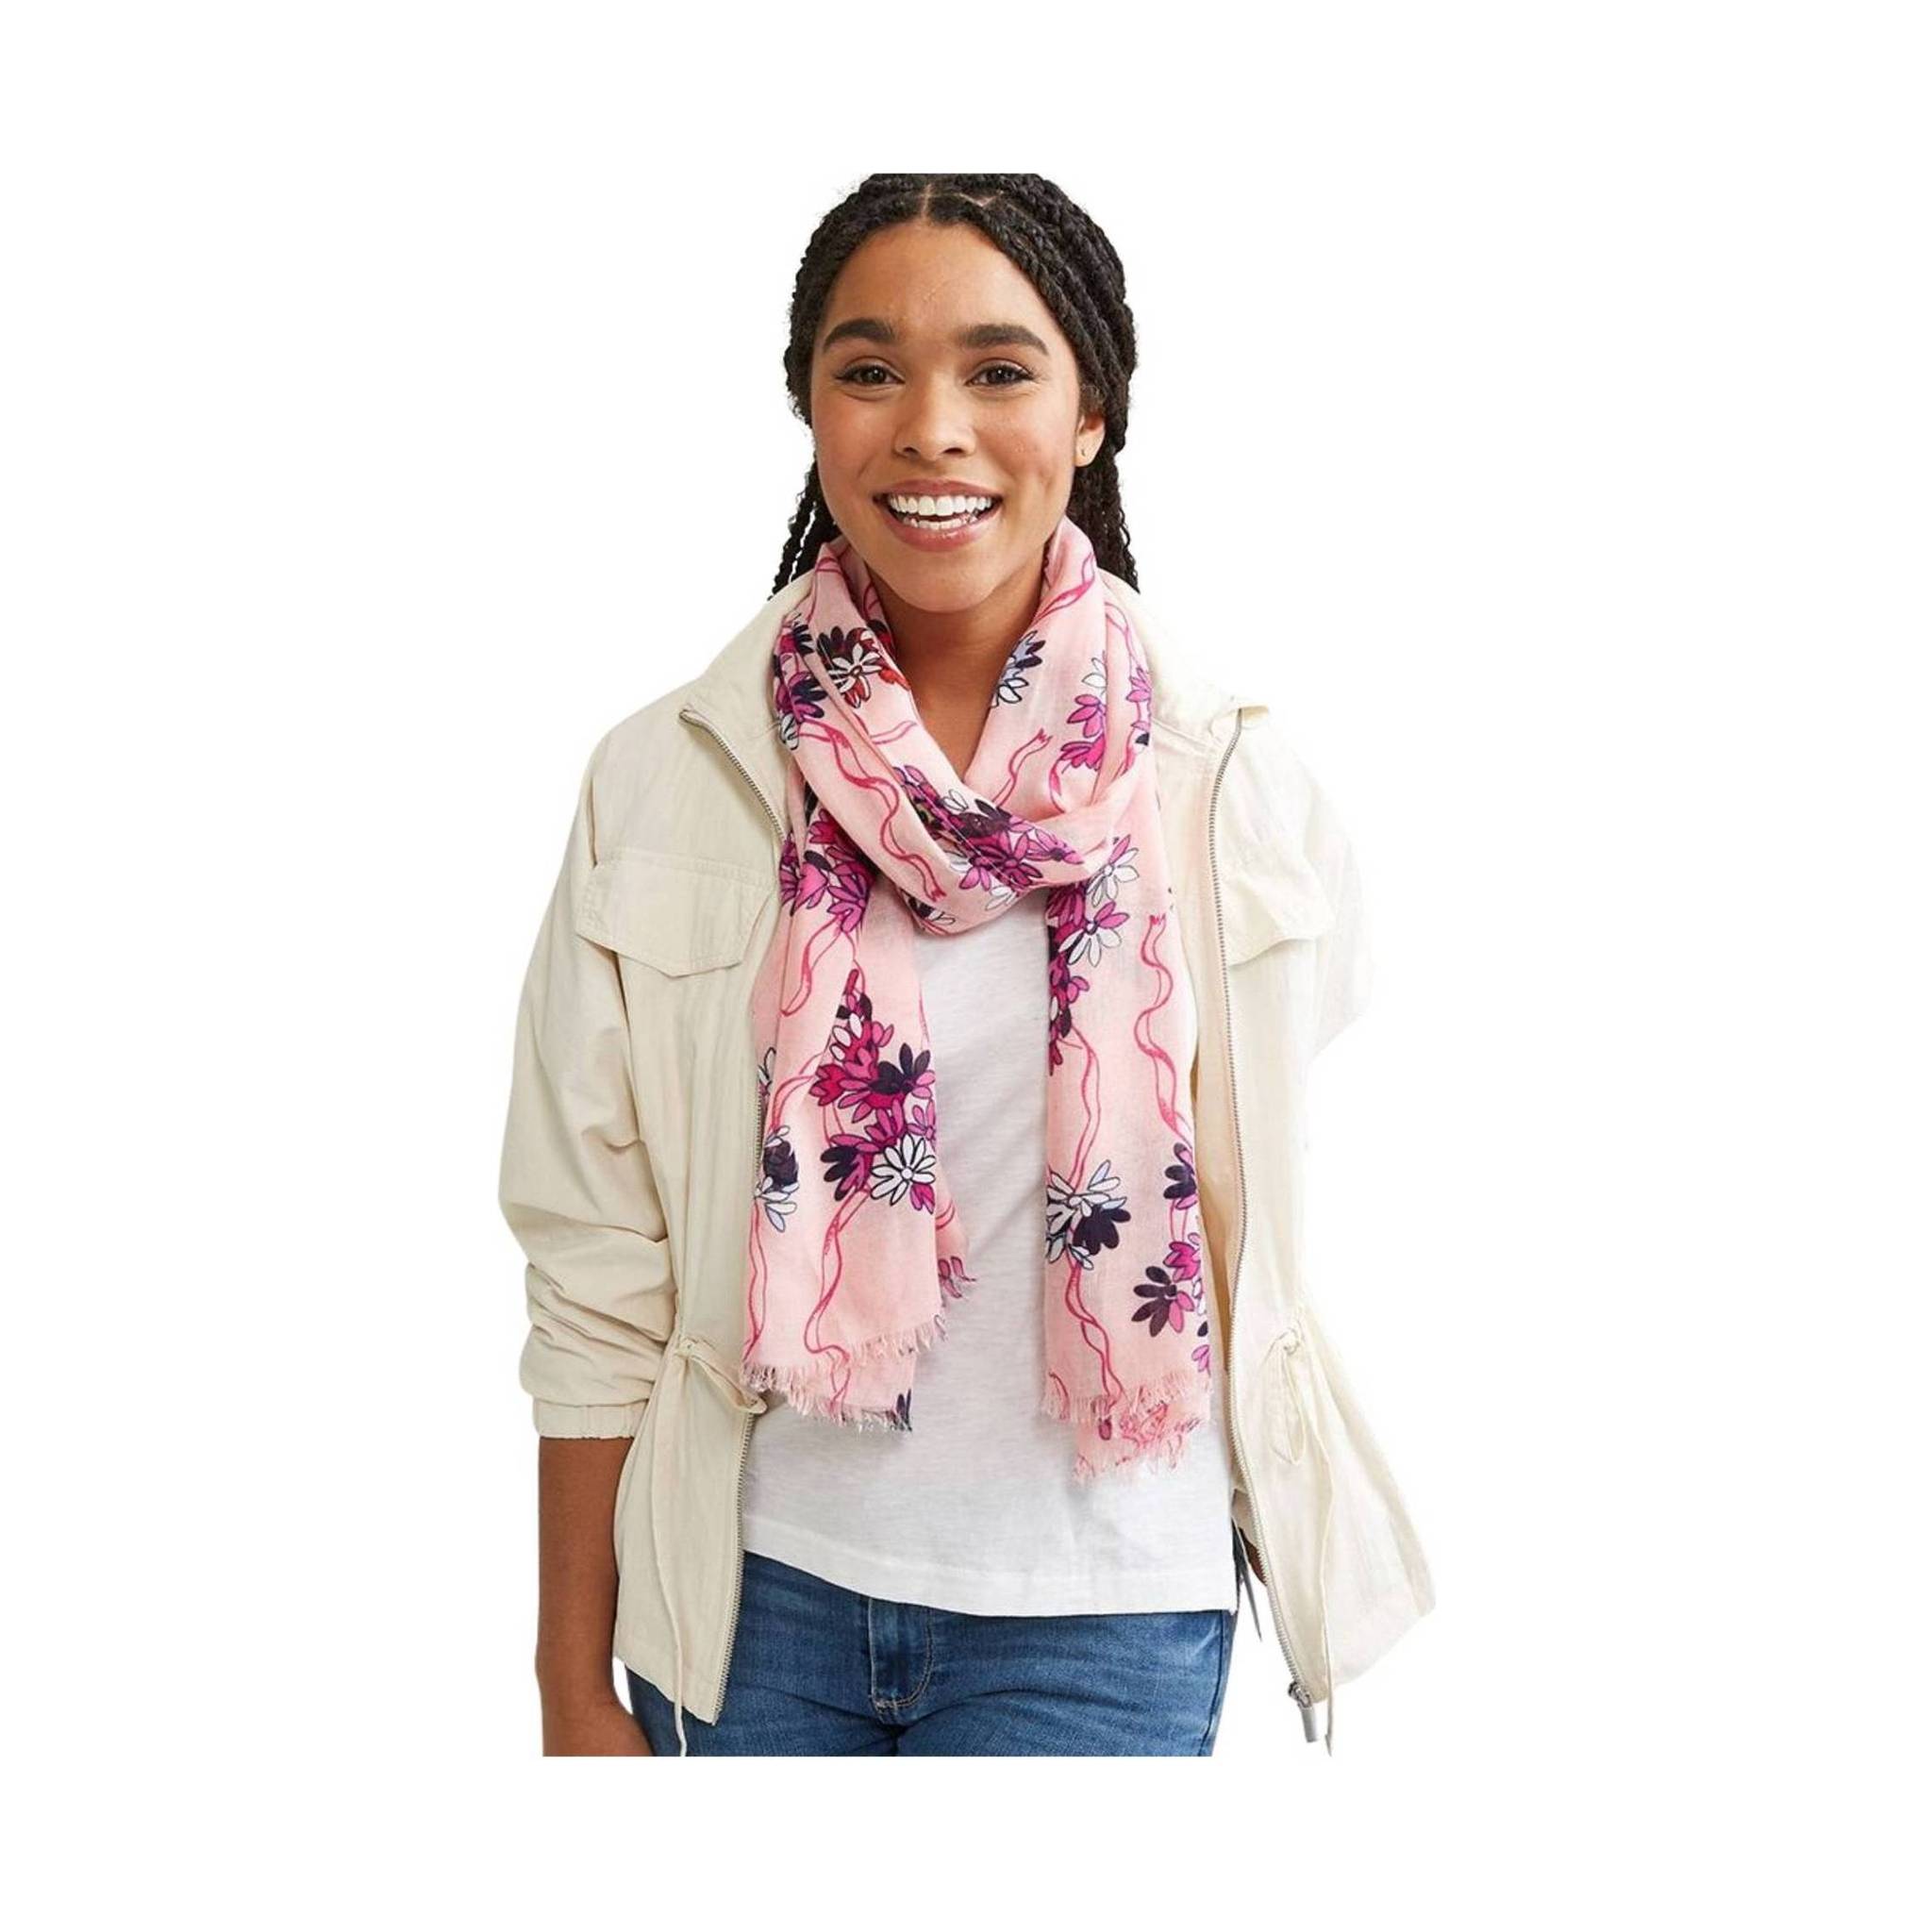 https://lennyshoe.com/cdn/shop/products/vera-bradley-soft-fringe-scarf-hope-blooms-pink-575384.jpg?v=1693777395